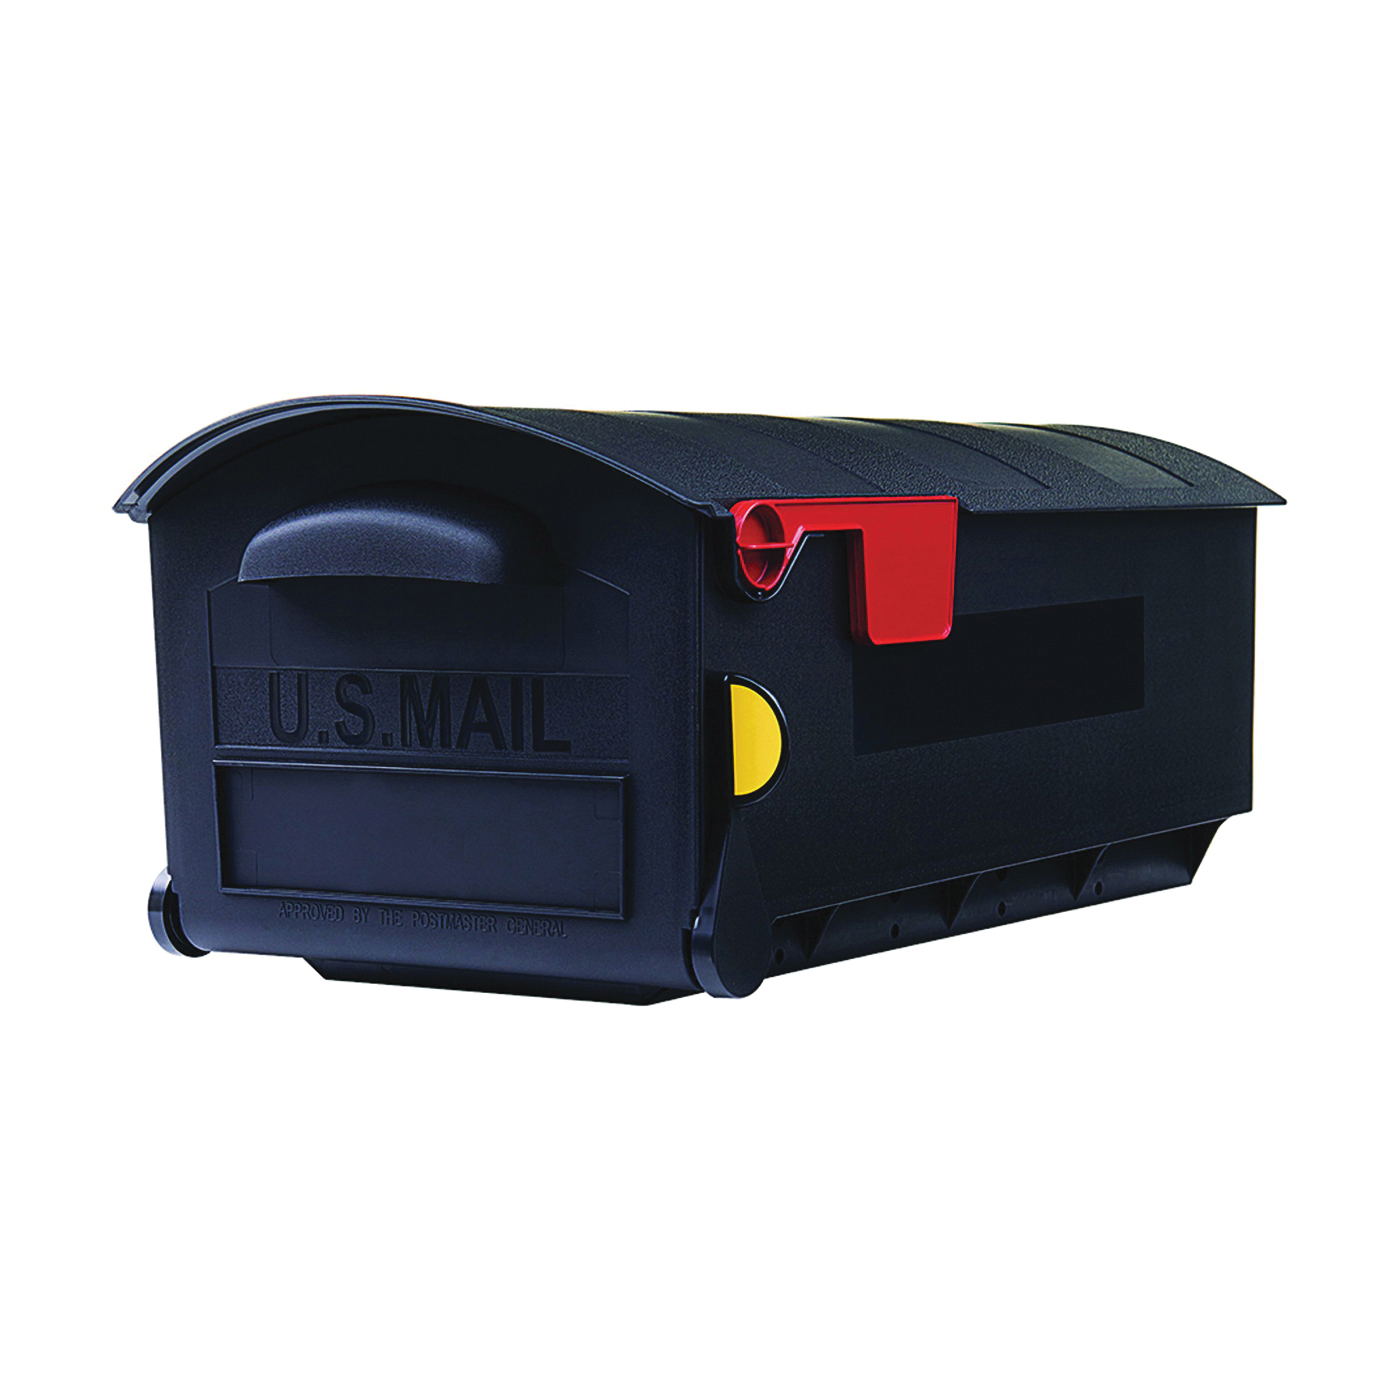 Gibraltar Mailboxes GMB515B01